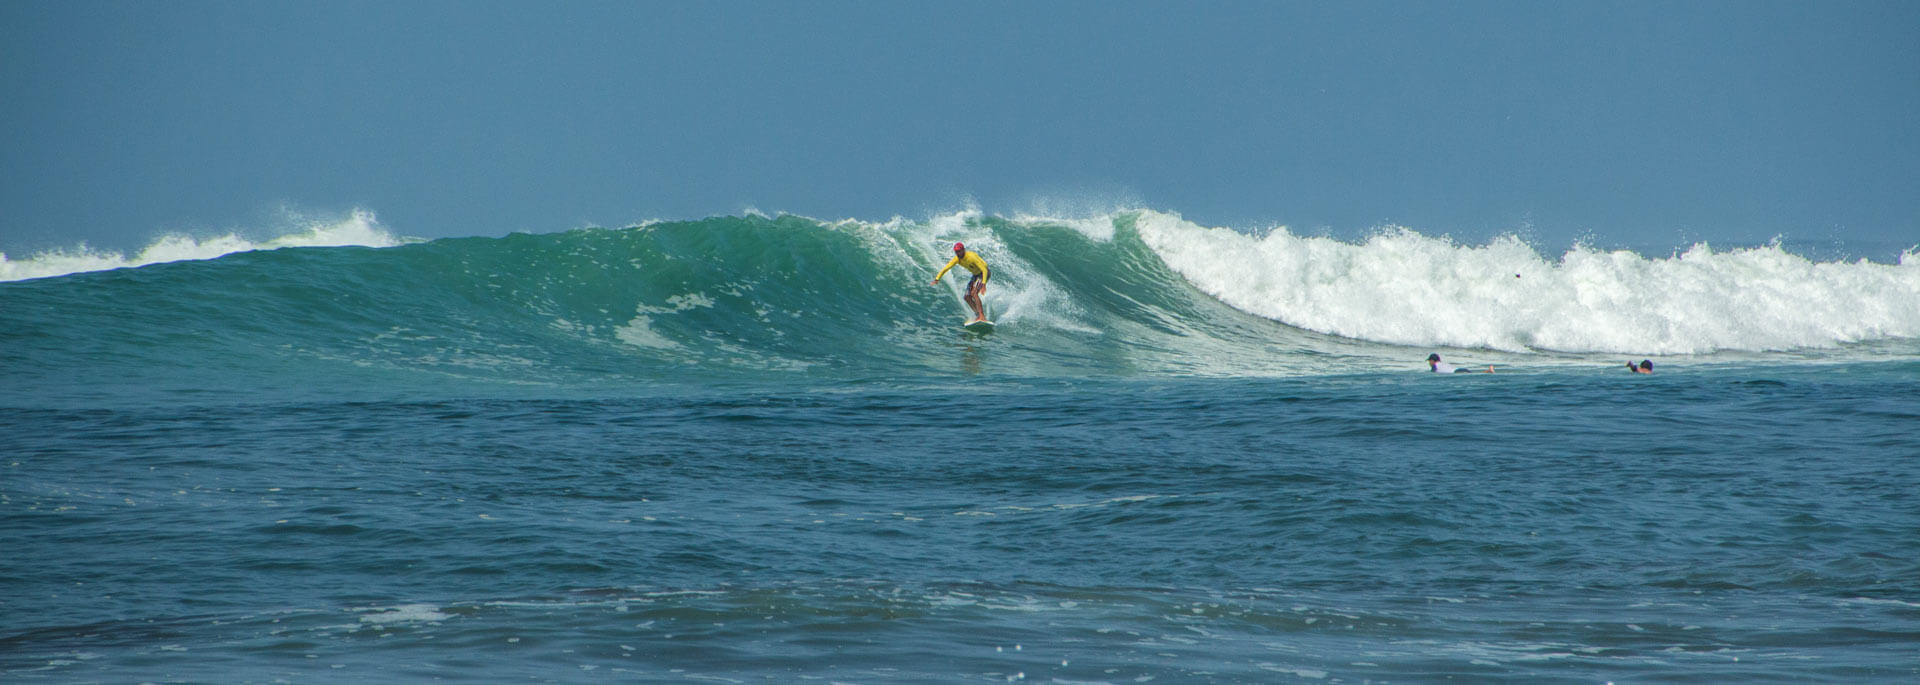 Fotos: Surfin' in El Tunco, El Salvador